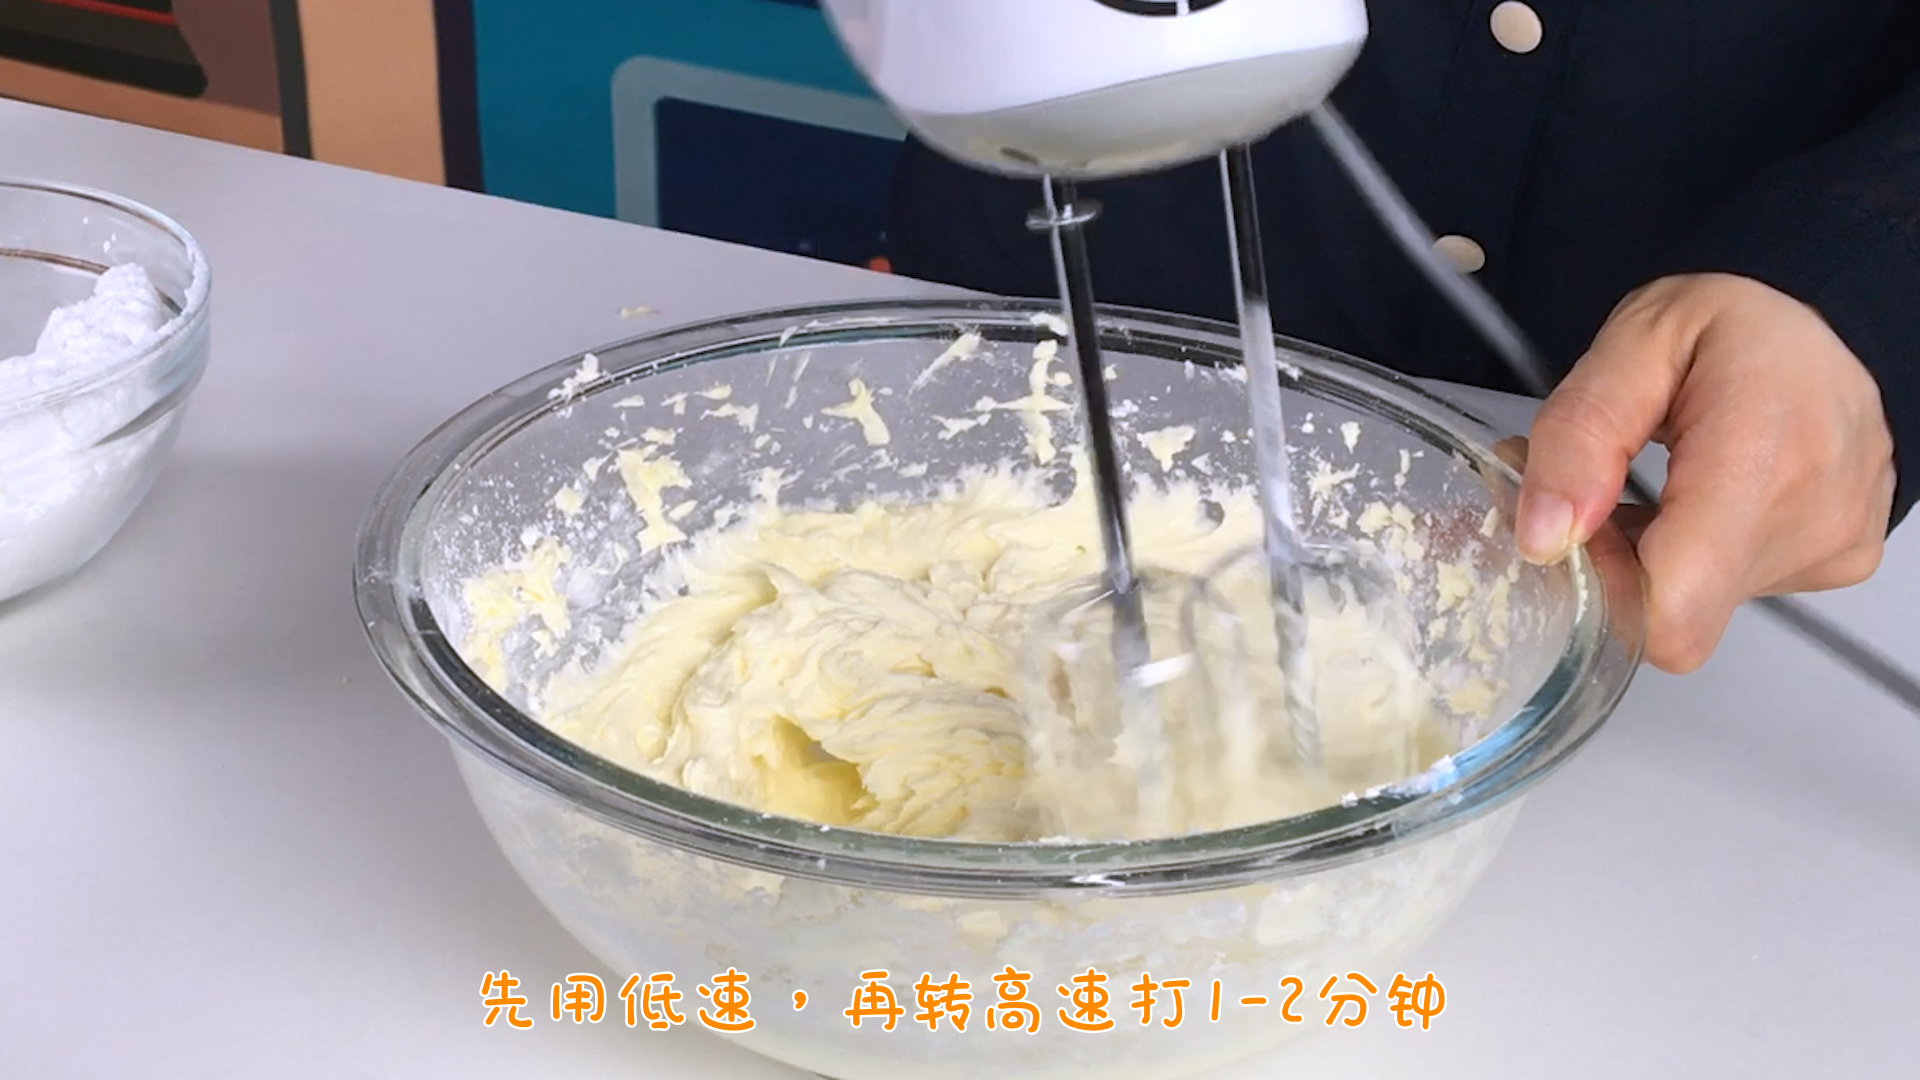 「英式」原味奶油乳酪霜 cream cheese icing的做法 步骤4